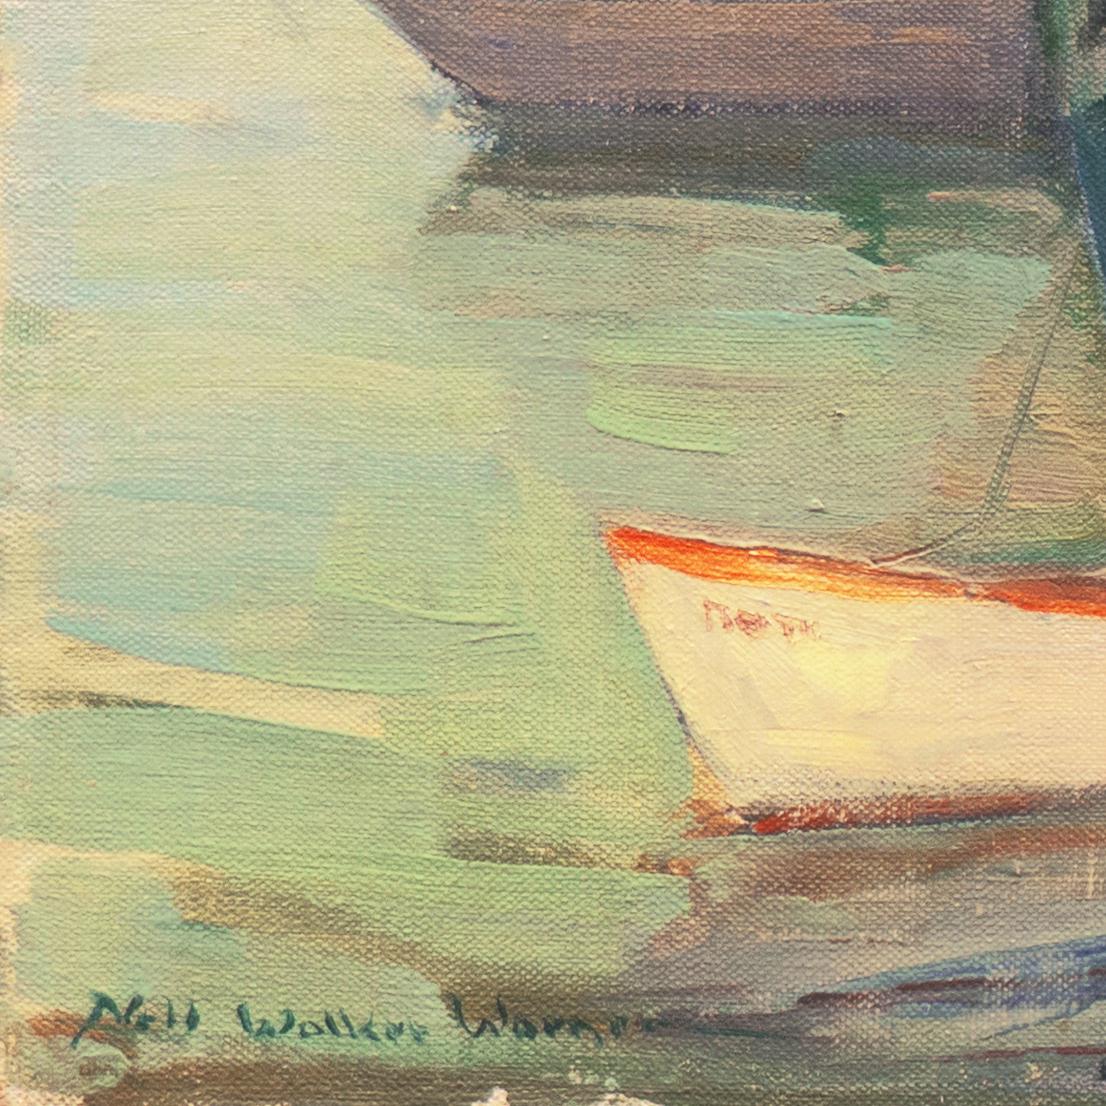 « Cape Ann Harbor », artiste féminine, Massachusetts, Rockport, Gloucester, LACMA - Painting de Nell Walker Warner